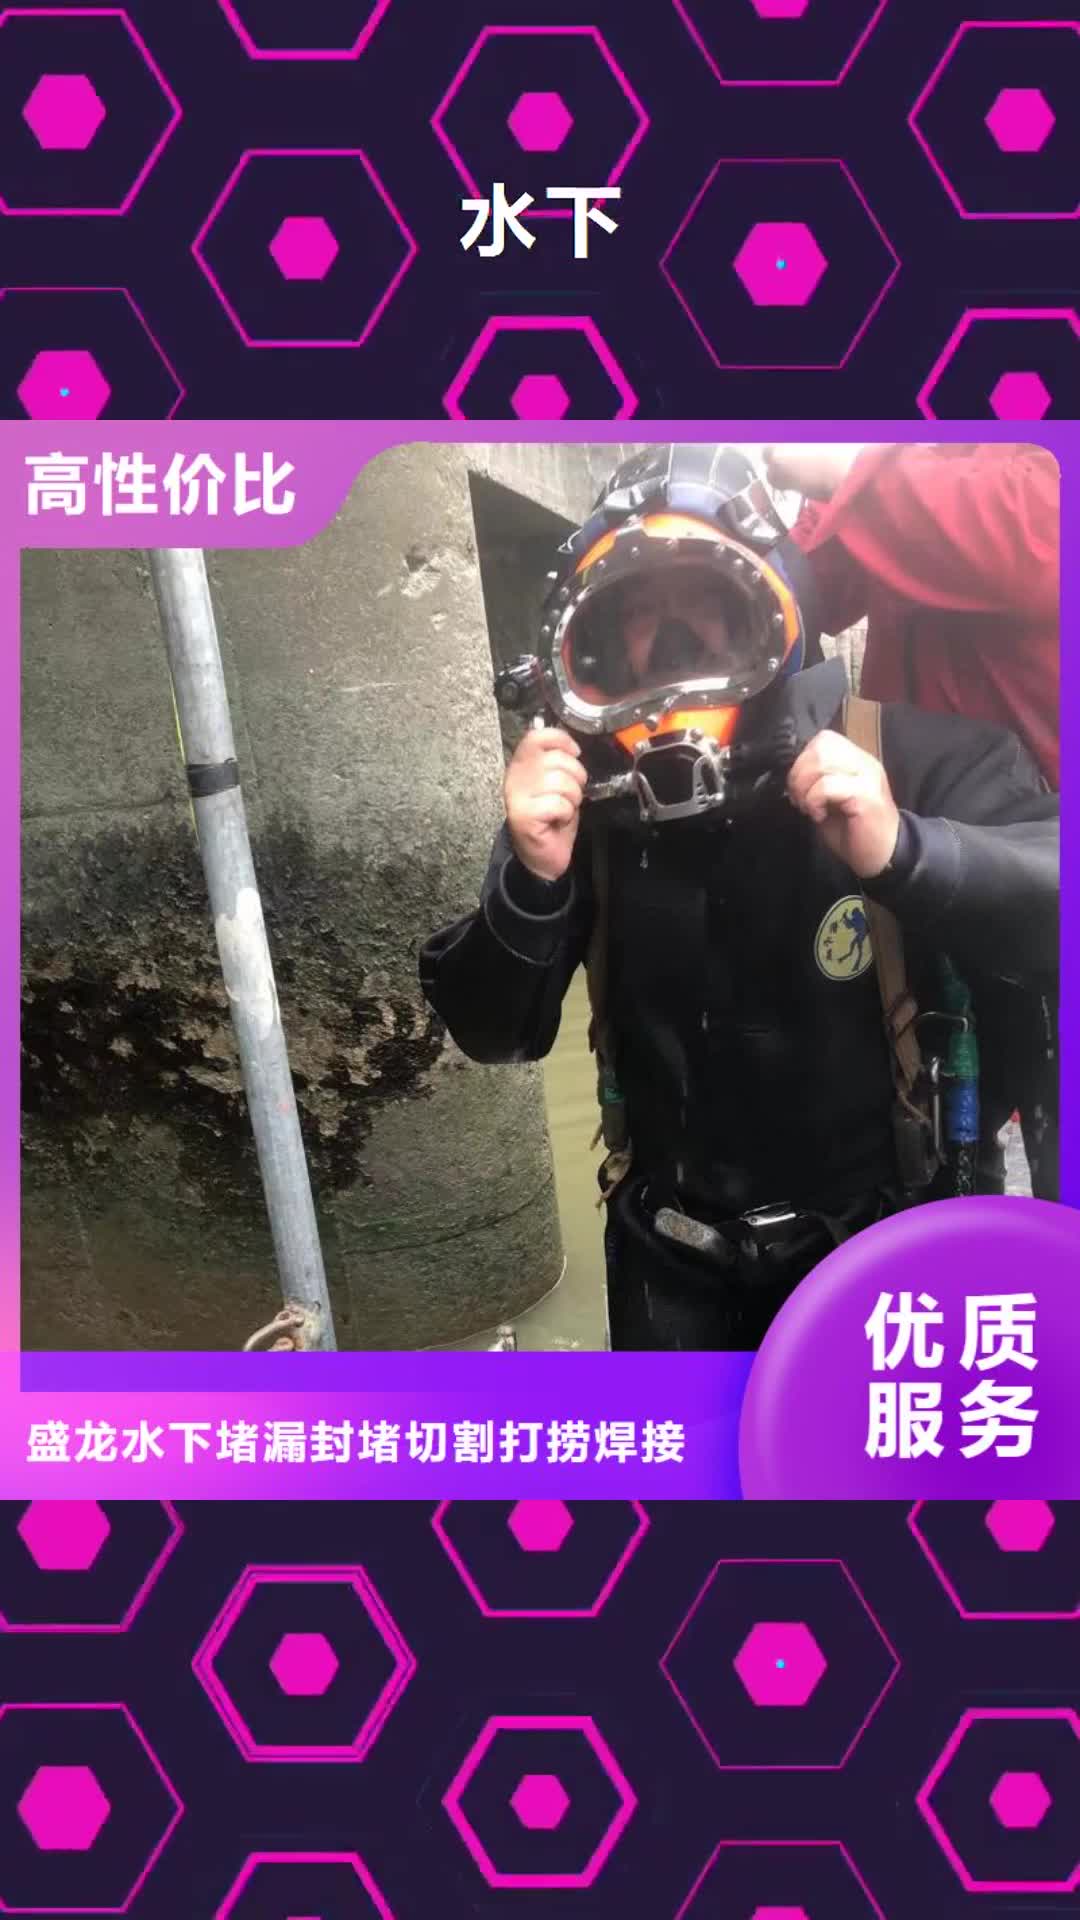 香港 水下 【水下拍照摄像】解决方案